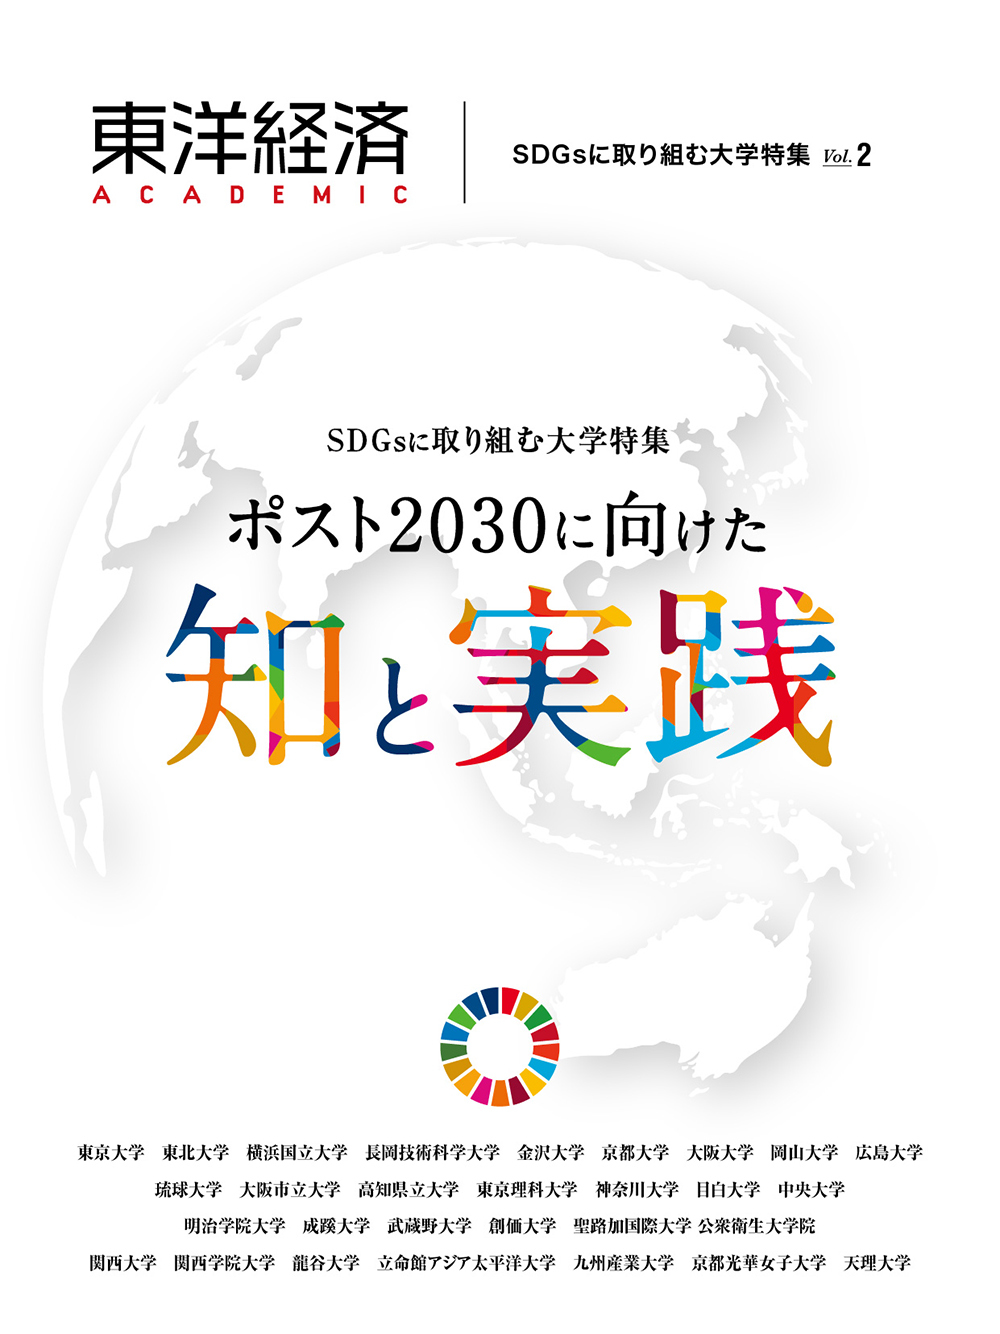 東洋経済ACADEMIC SDGsに取り組む大学特集 Vol.2